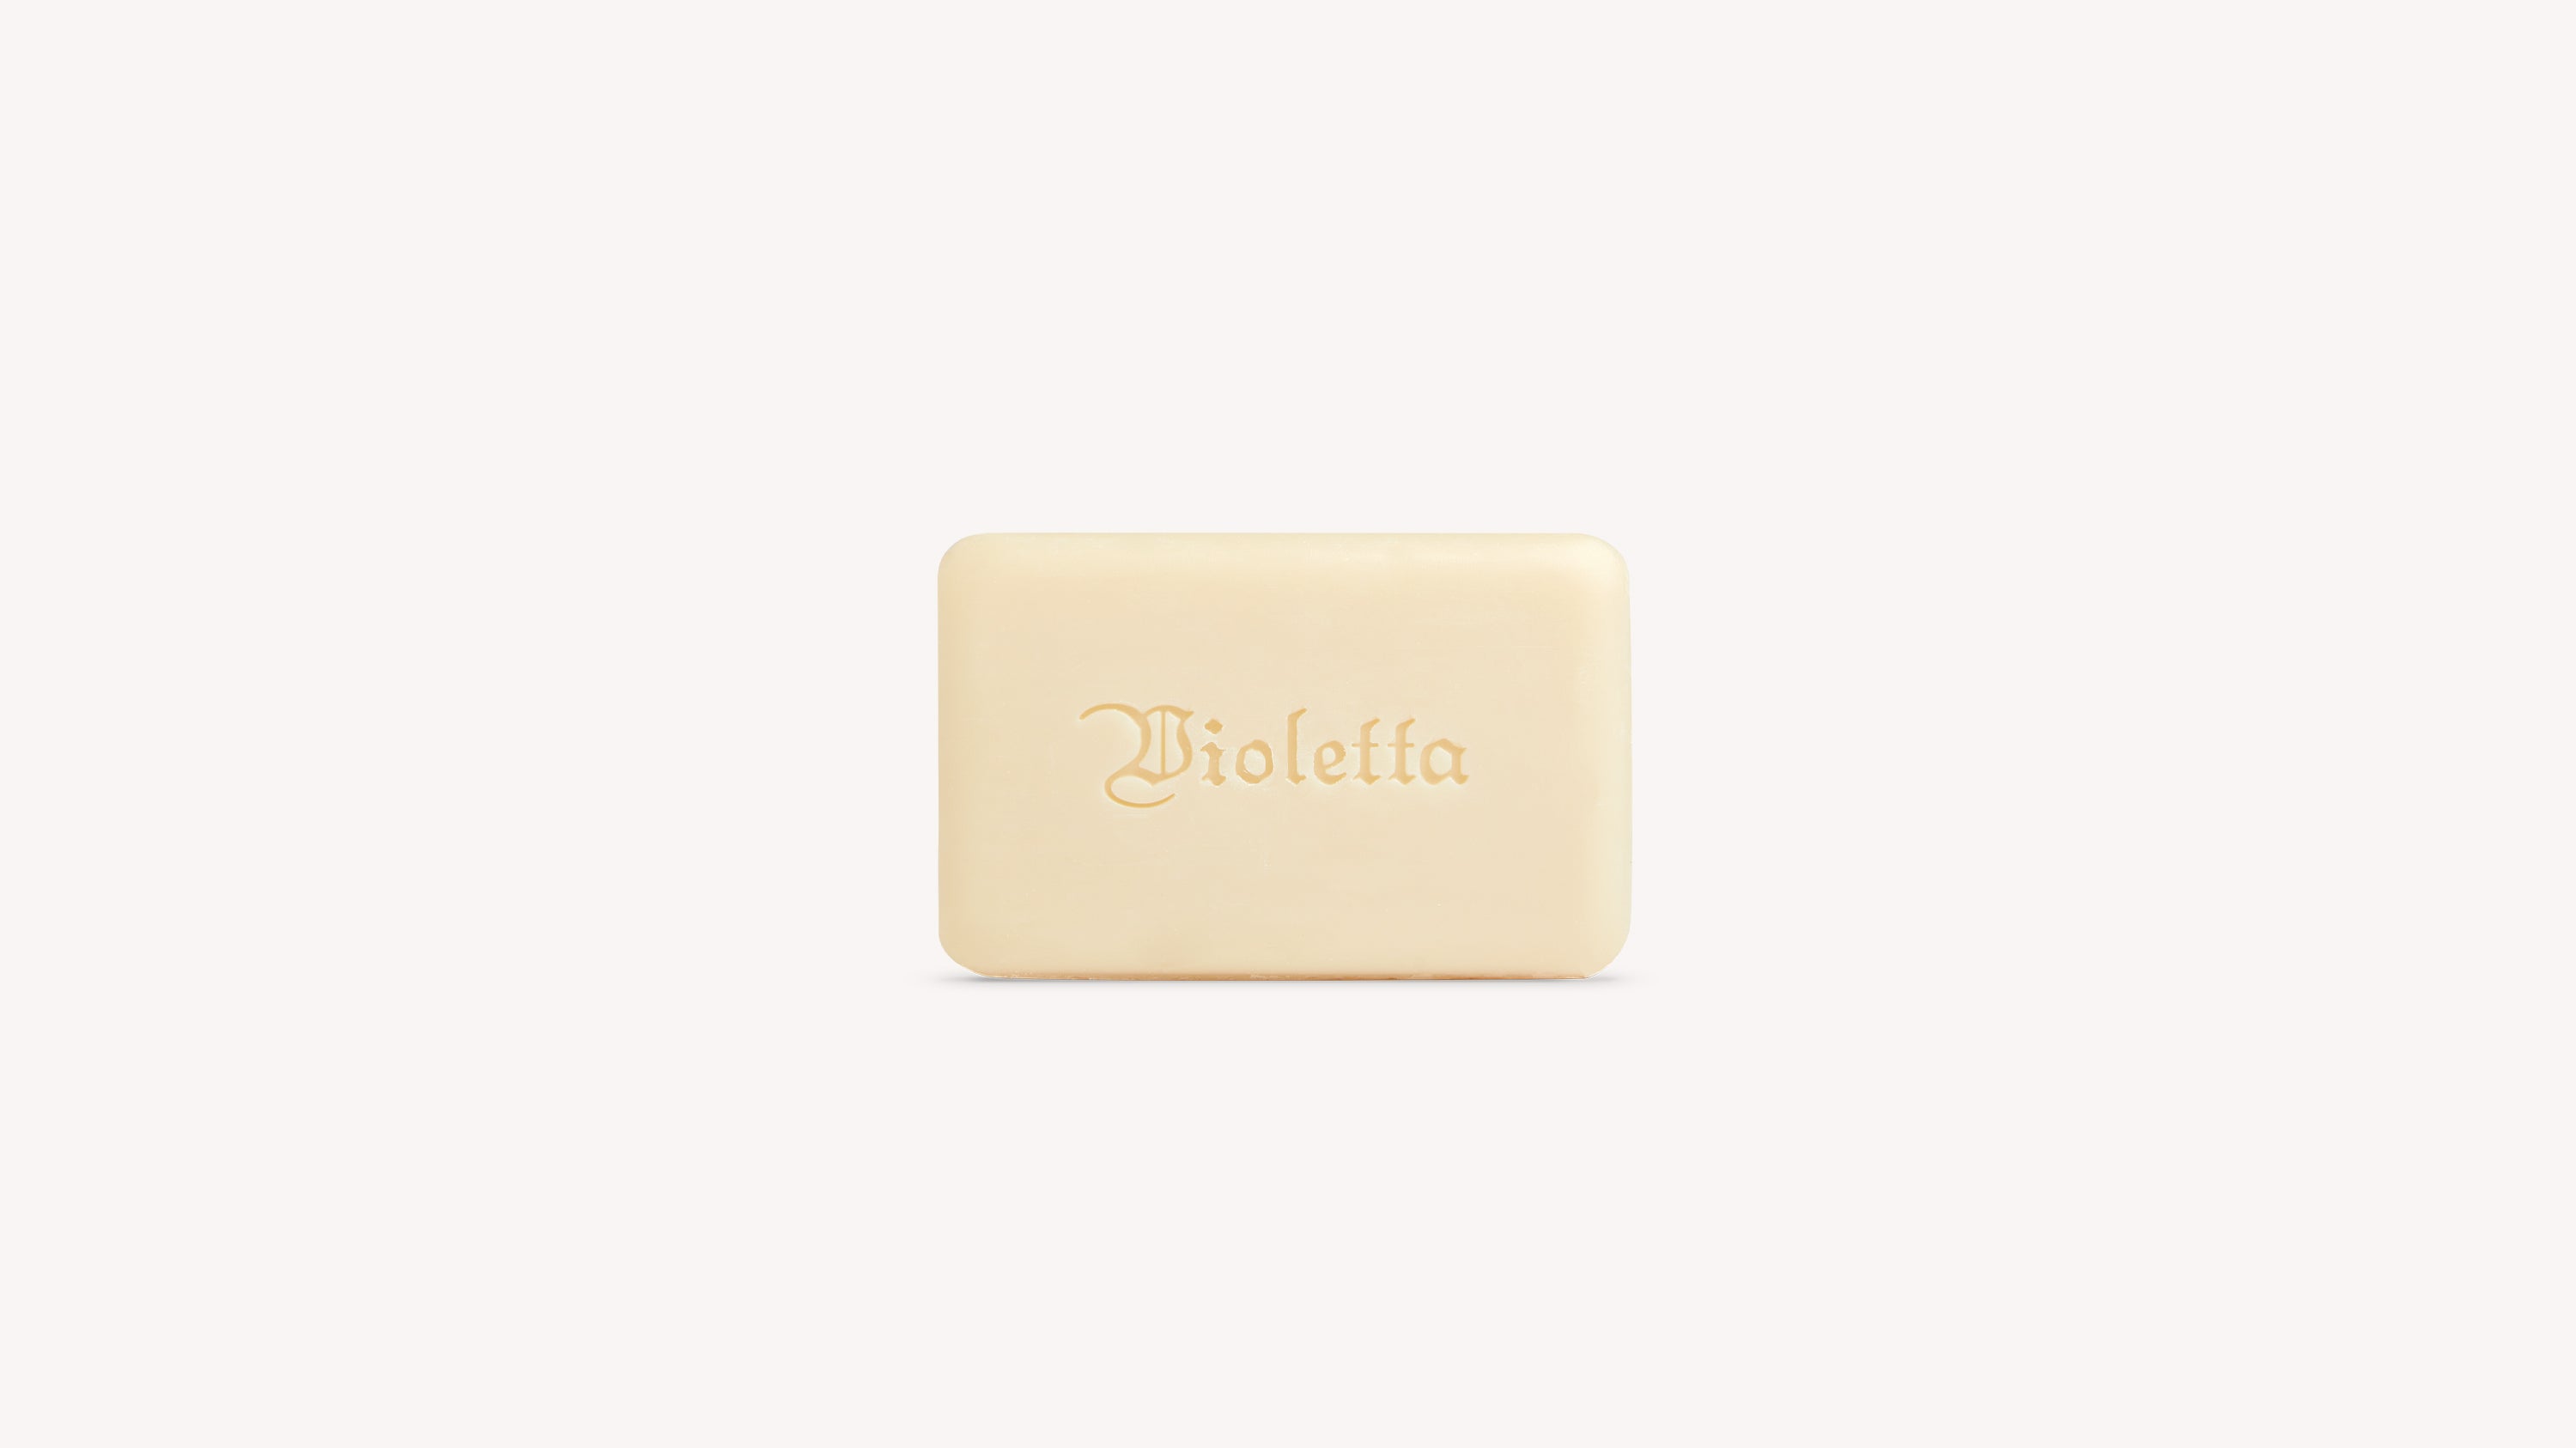 Violetta Milk Soap Body Care officina-smn-usa-ca.myshopify.com Officina Profumo Farmaceutica di Santa Maria Novella - US